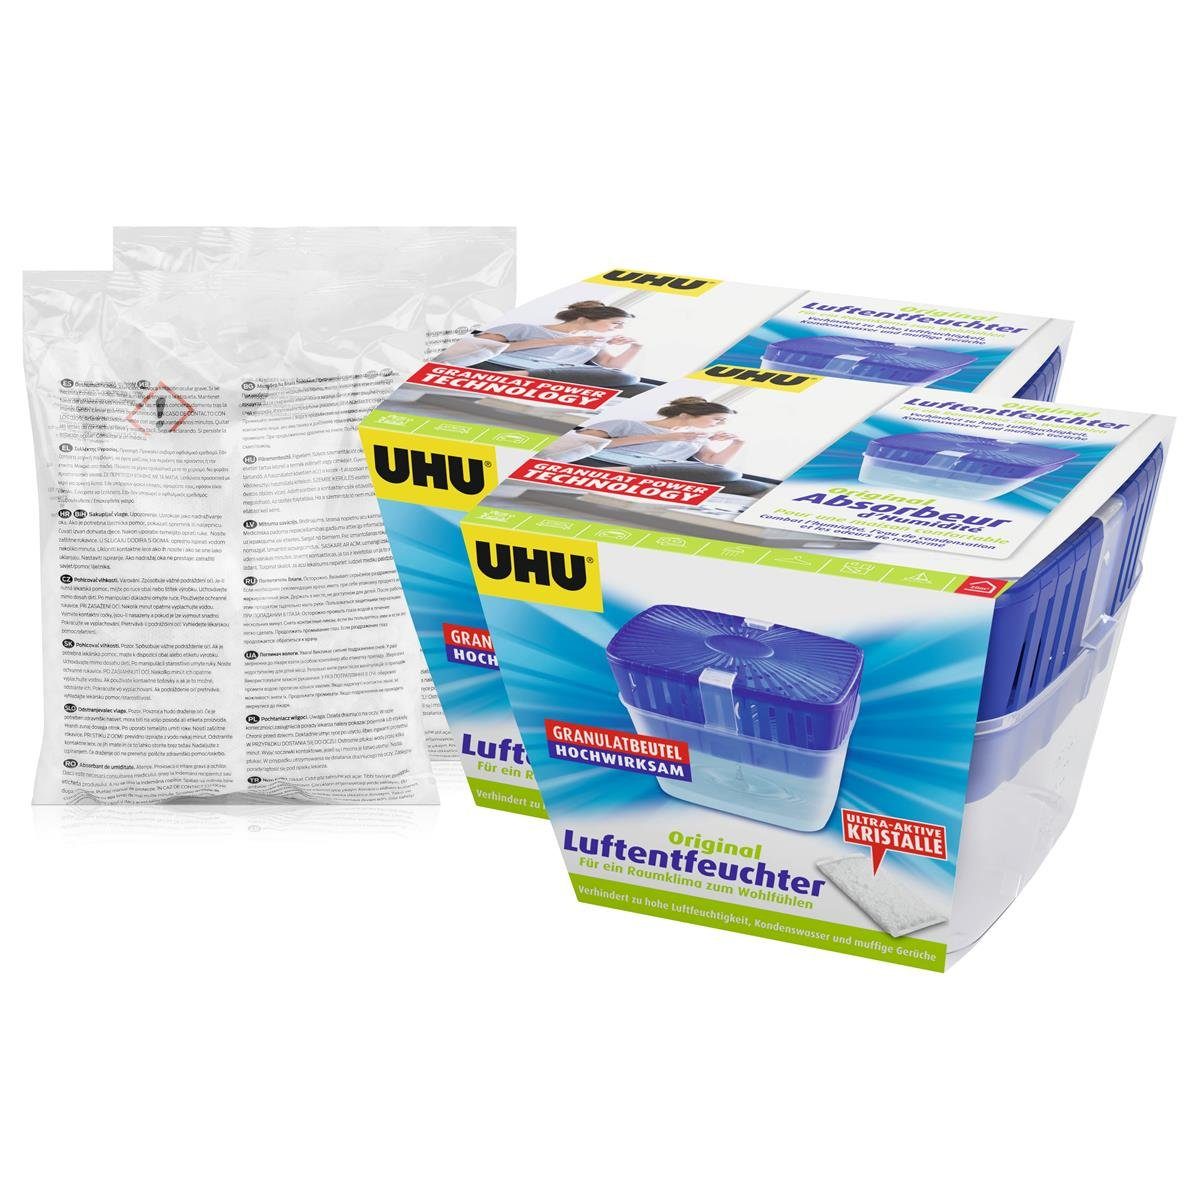 UHU Luftentfeuchter 2x Uhu Air Max Luftentfeuchter Original 450g + 2x  Nachfüllbeutel 450g - Spar-se online kaufen | OTTO